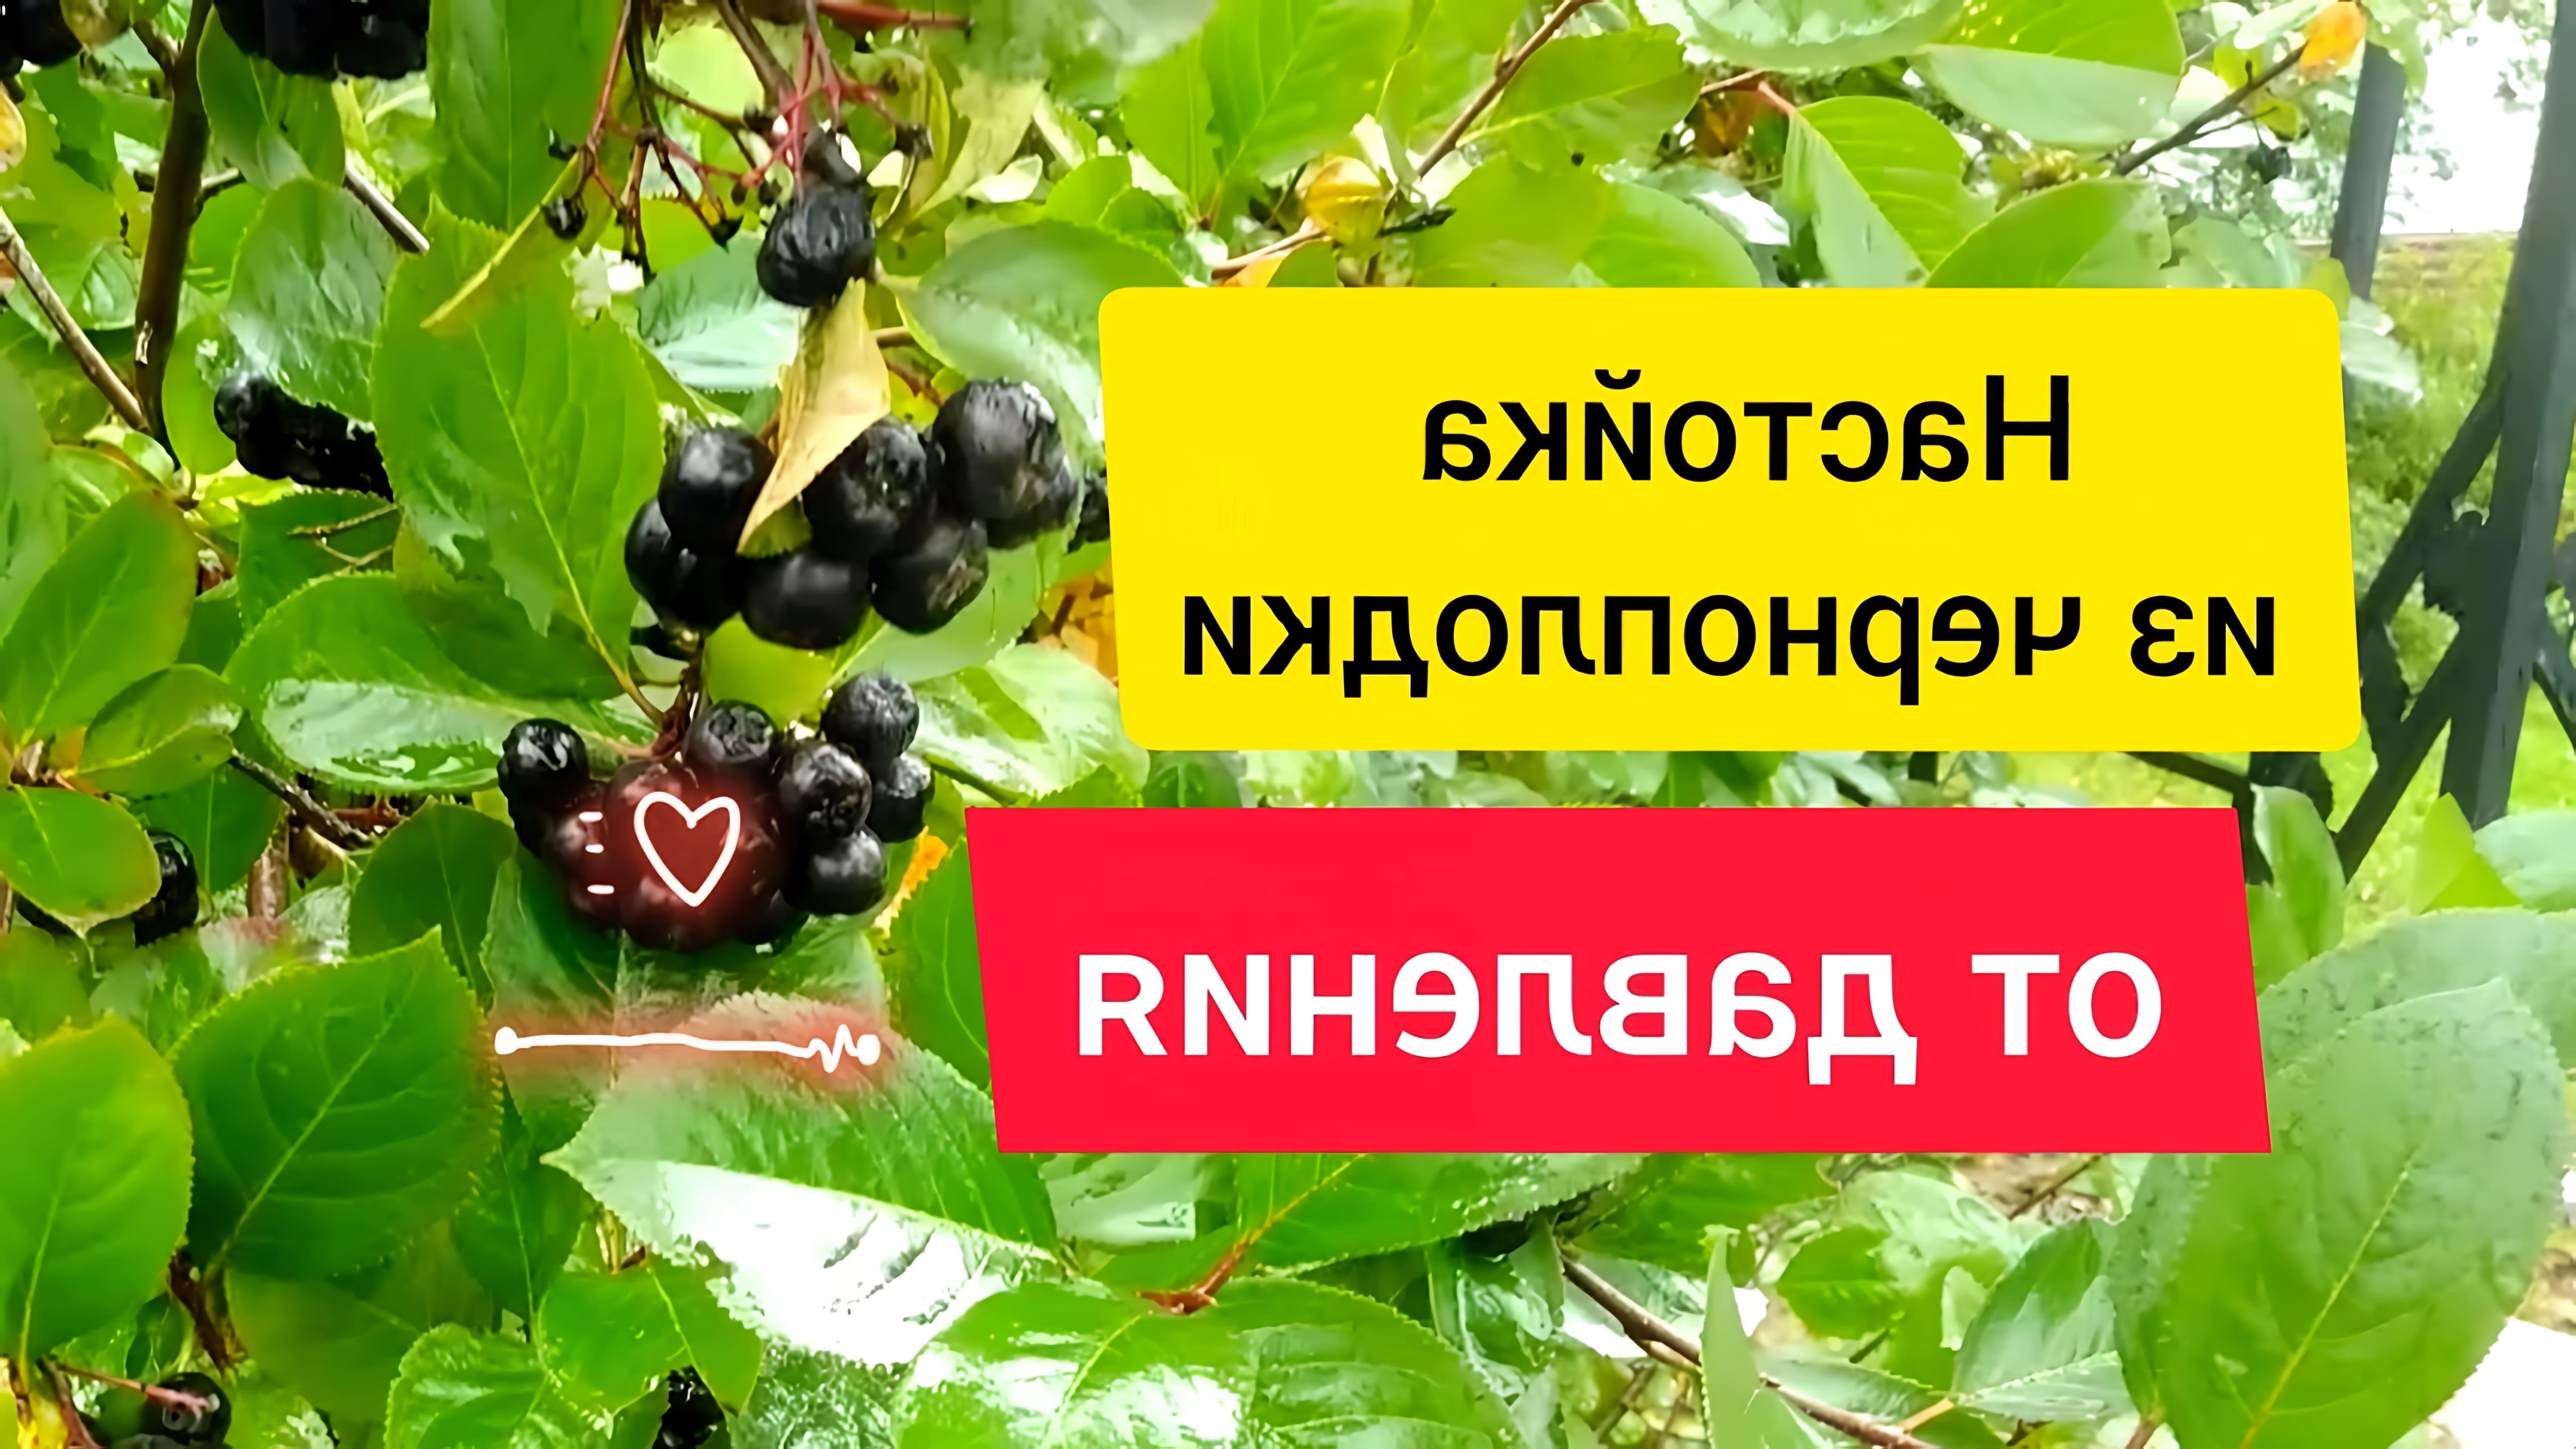 В этом видео рассказывается о рецепте приготовления настойки из черноплодной рябины, которая может помочь при повышенном давлении